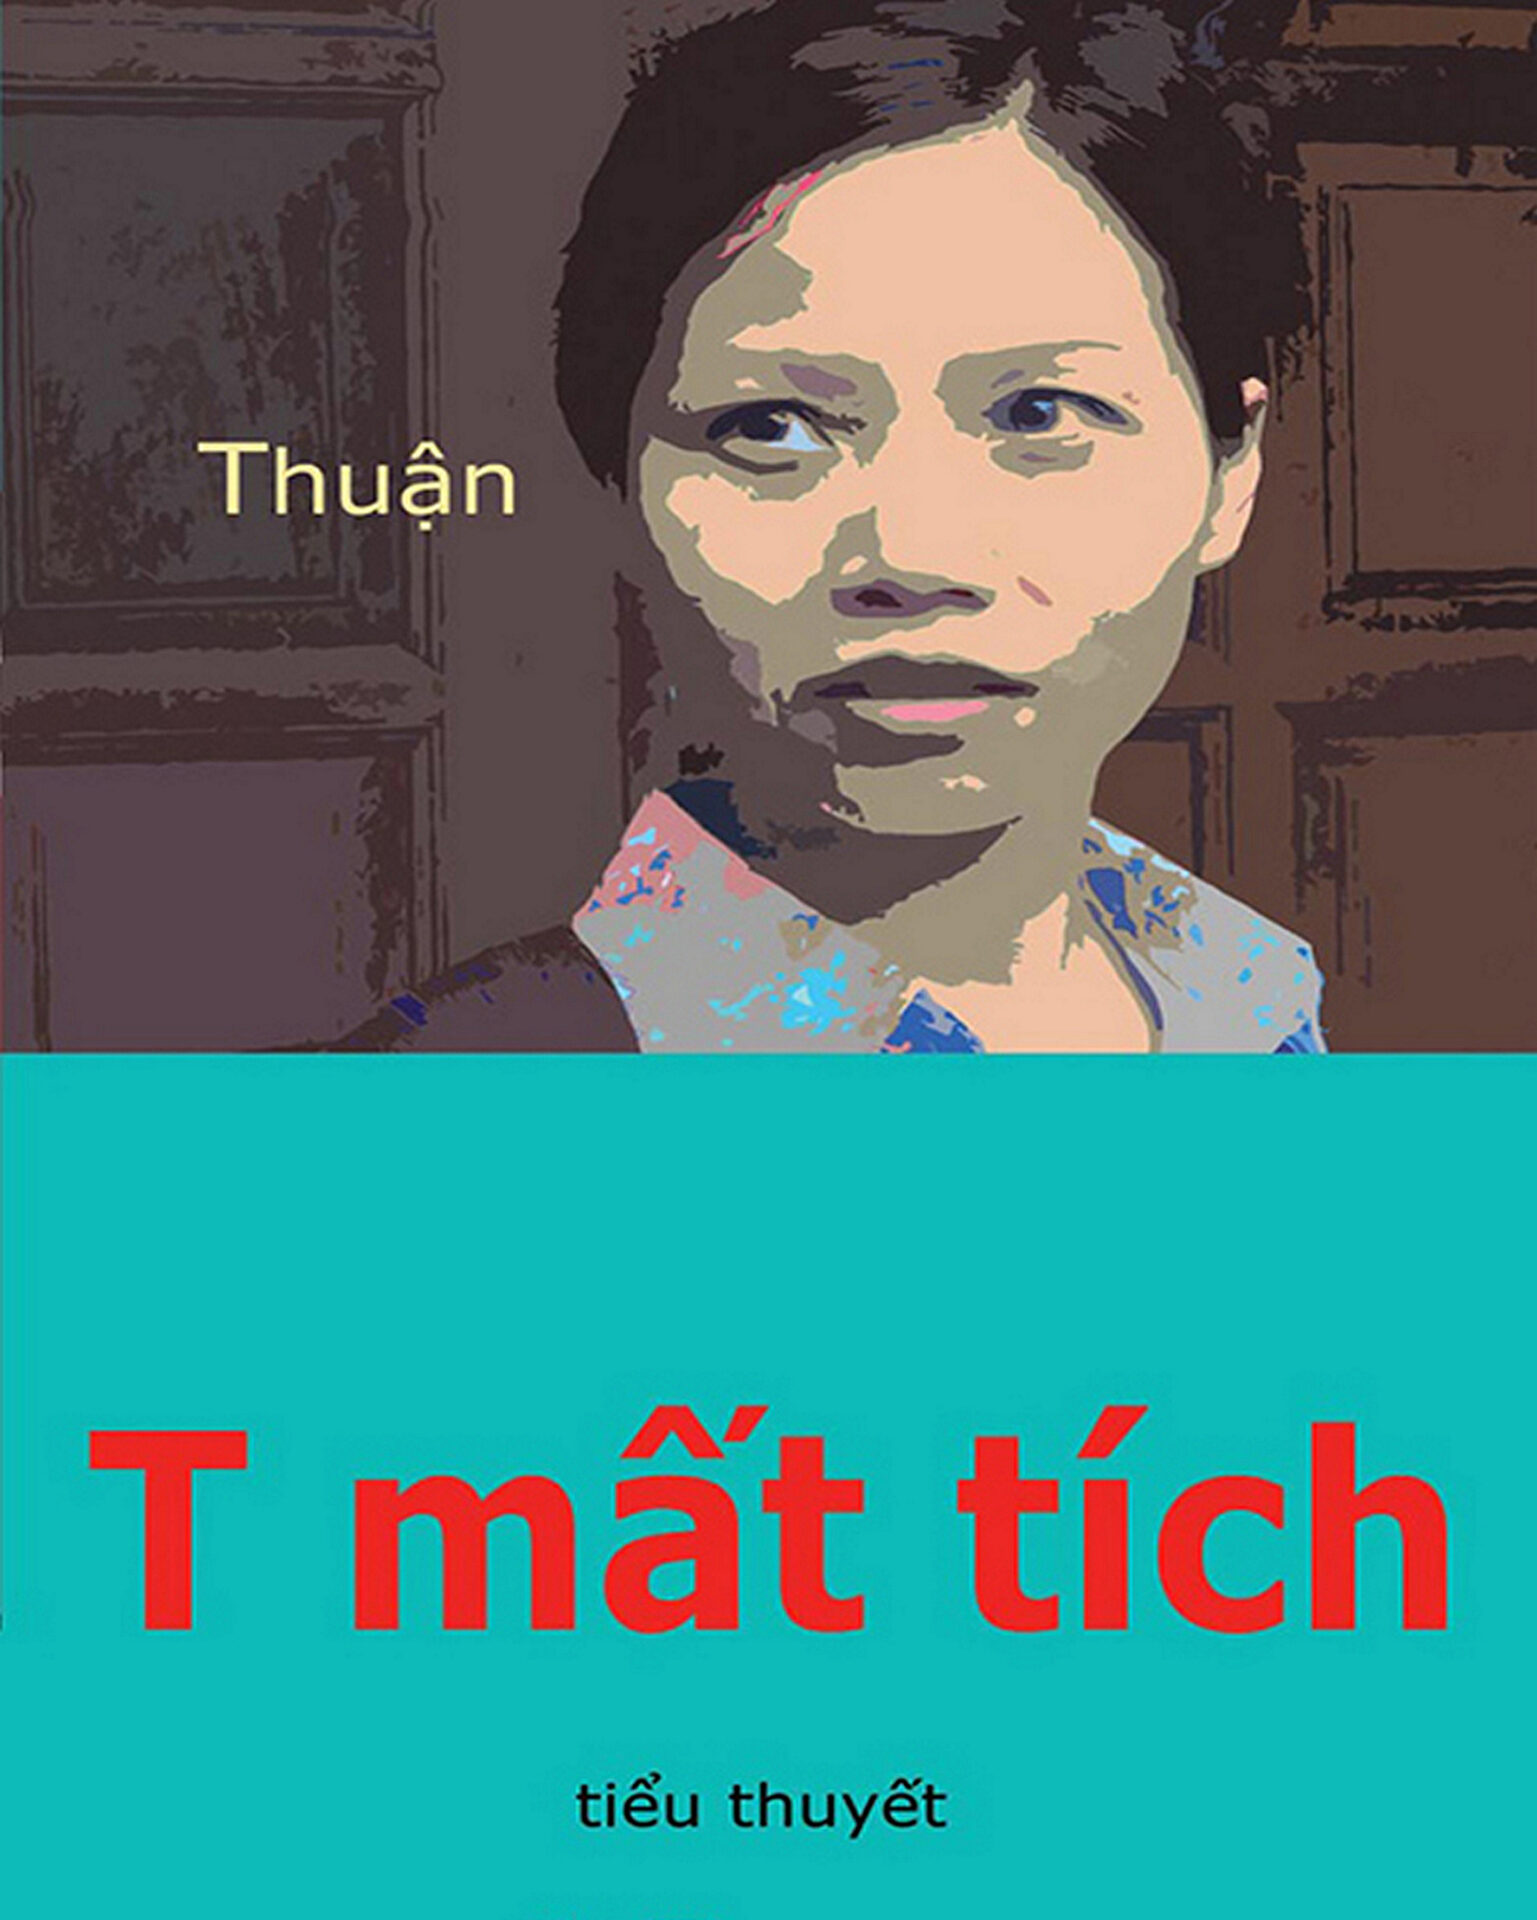 'T mất tích': tiểu thuyết đáng đọc của nhà văn Thuận